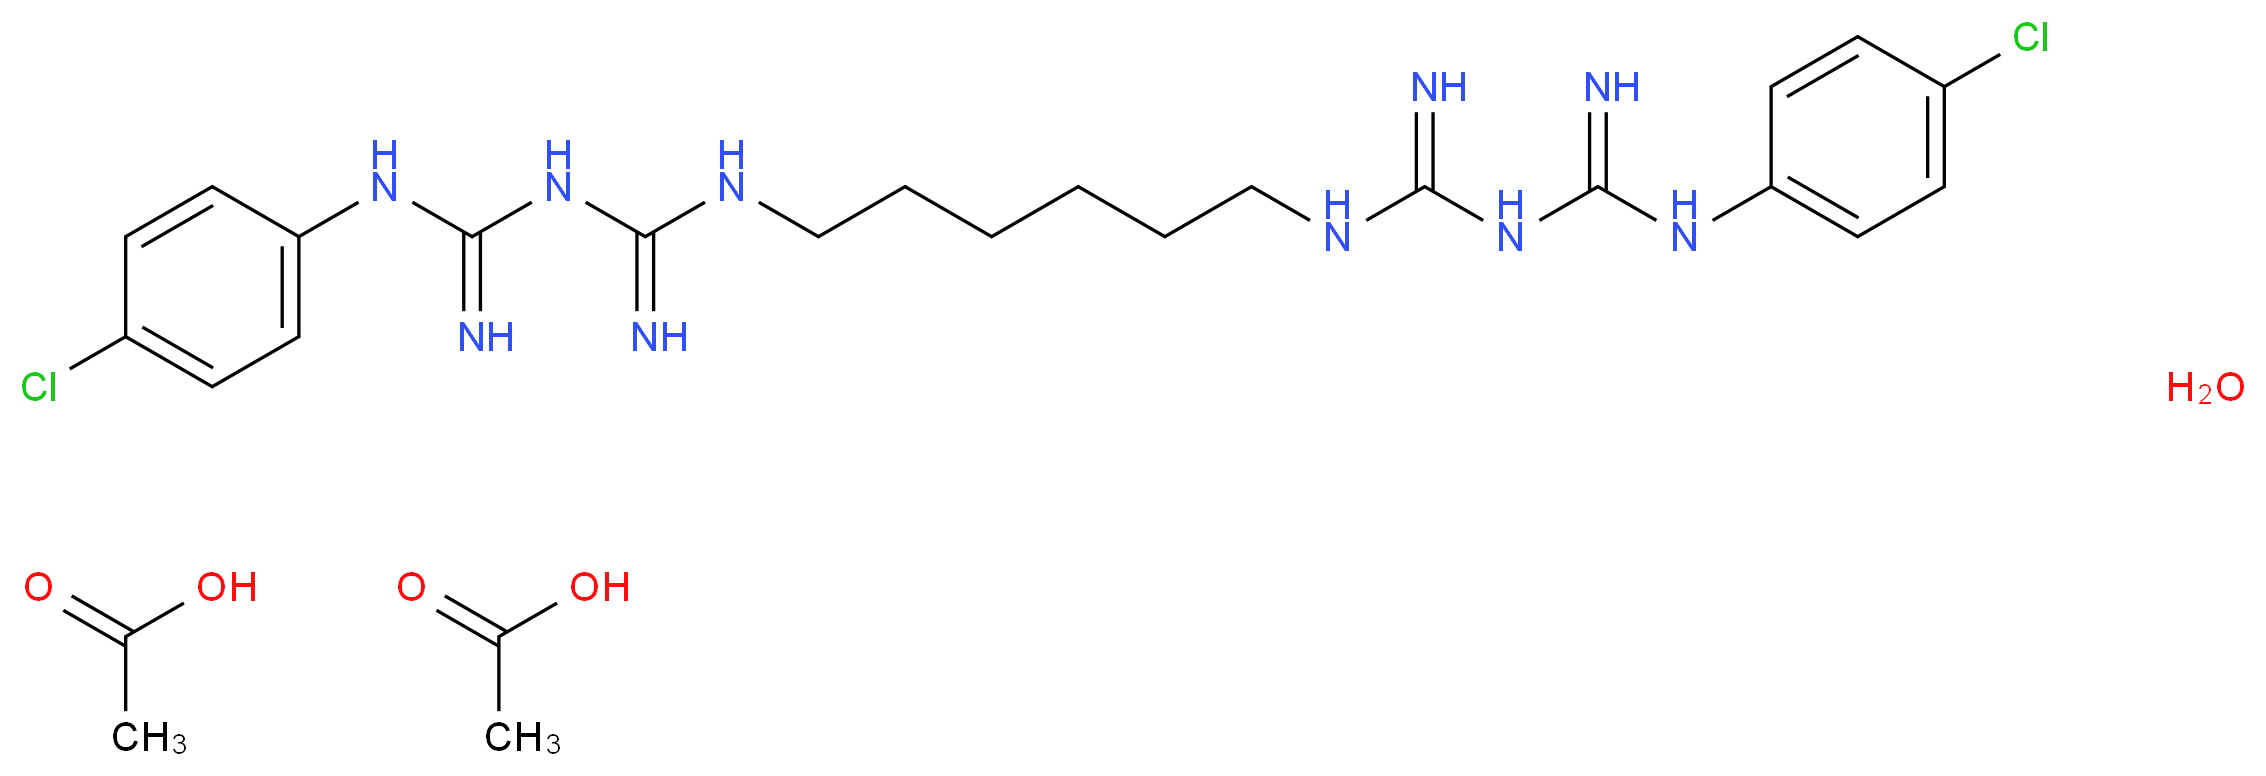 56-95-1 molecular structure